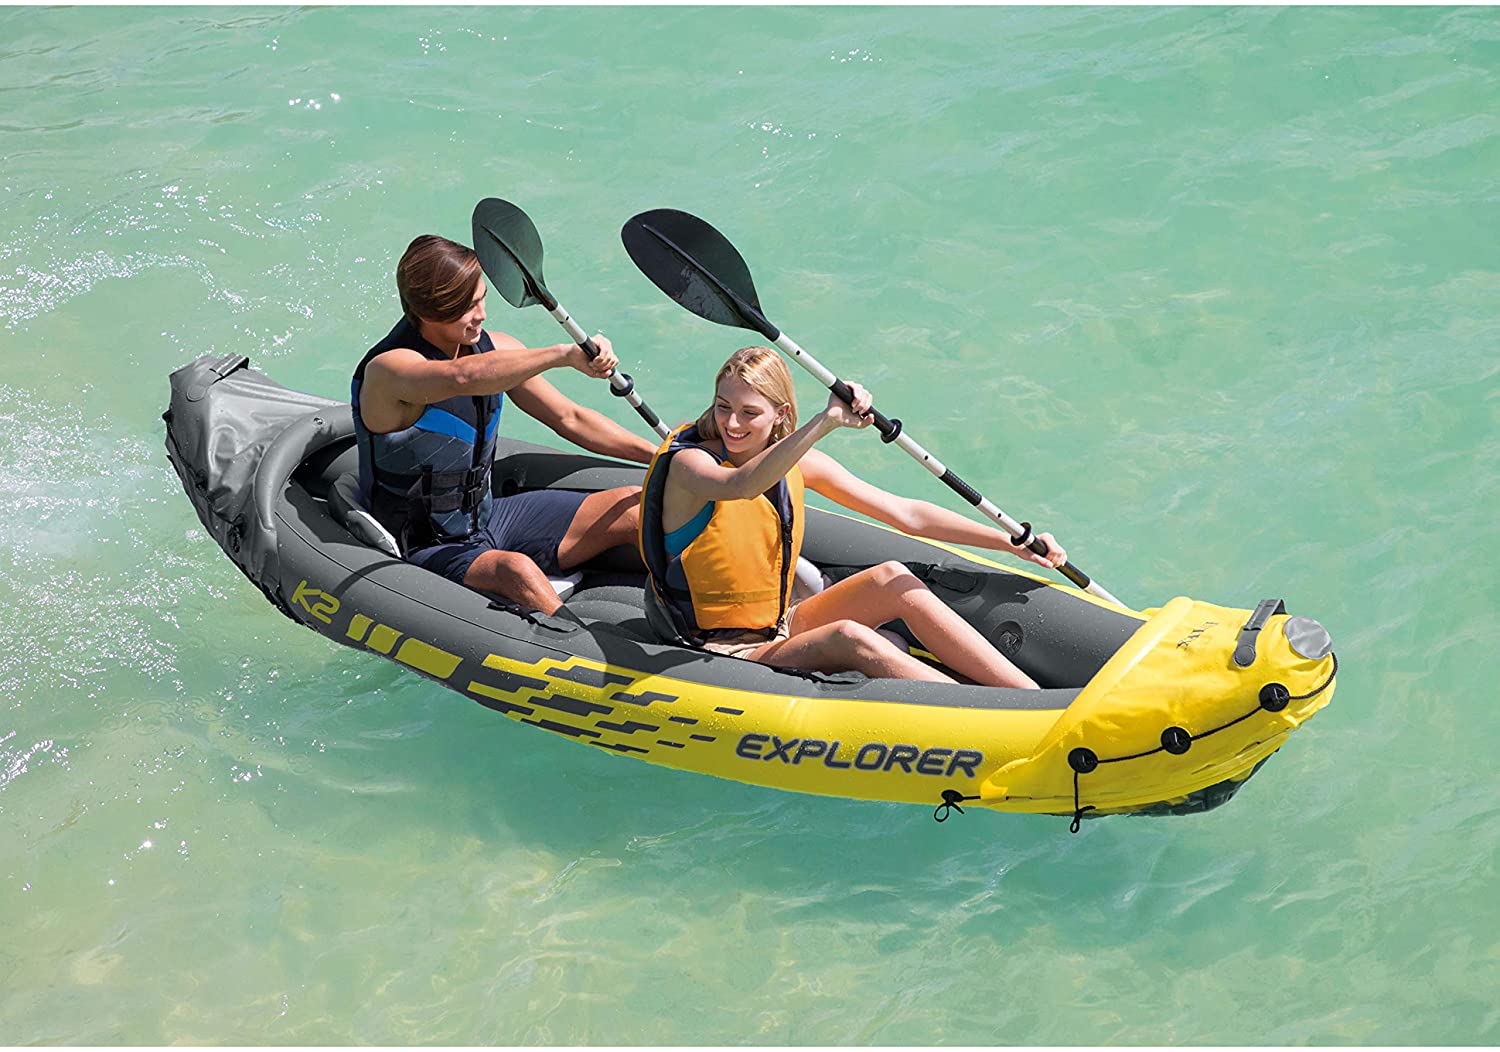 Best Recreational Kayaks Under $500